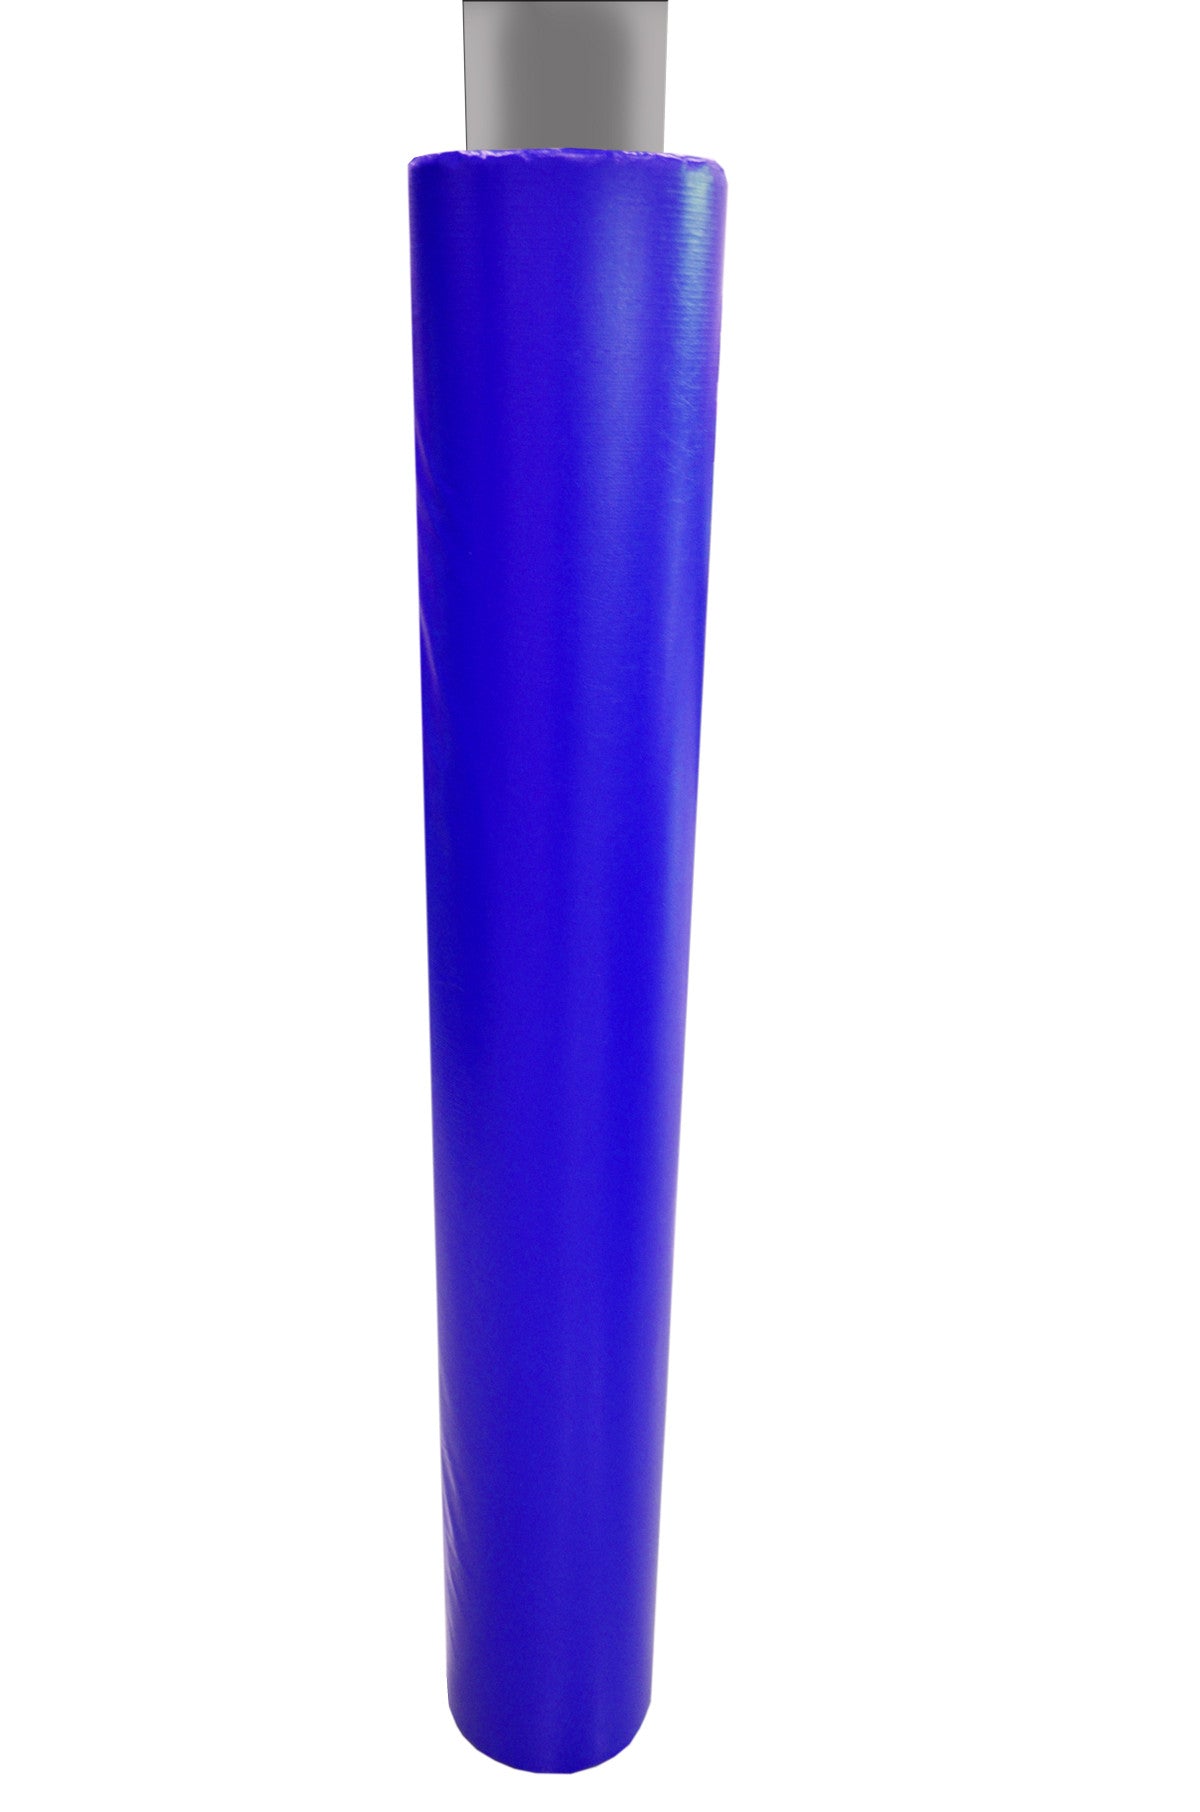 6' Tall Pole Pad, 9" Diameter